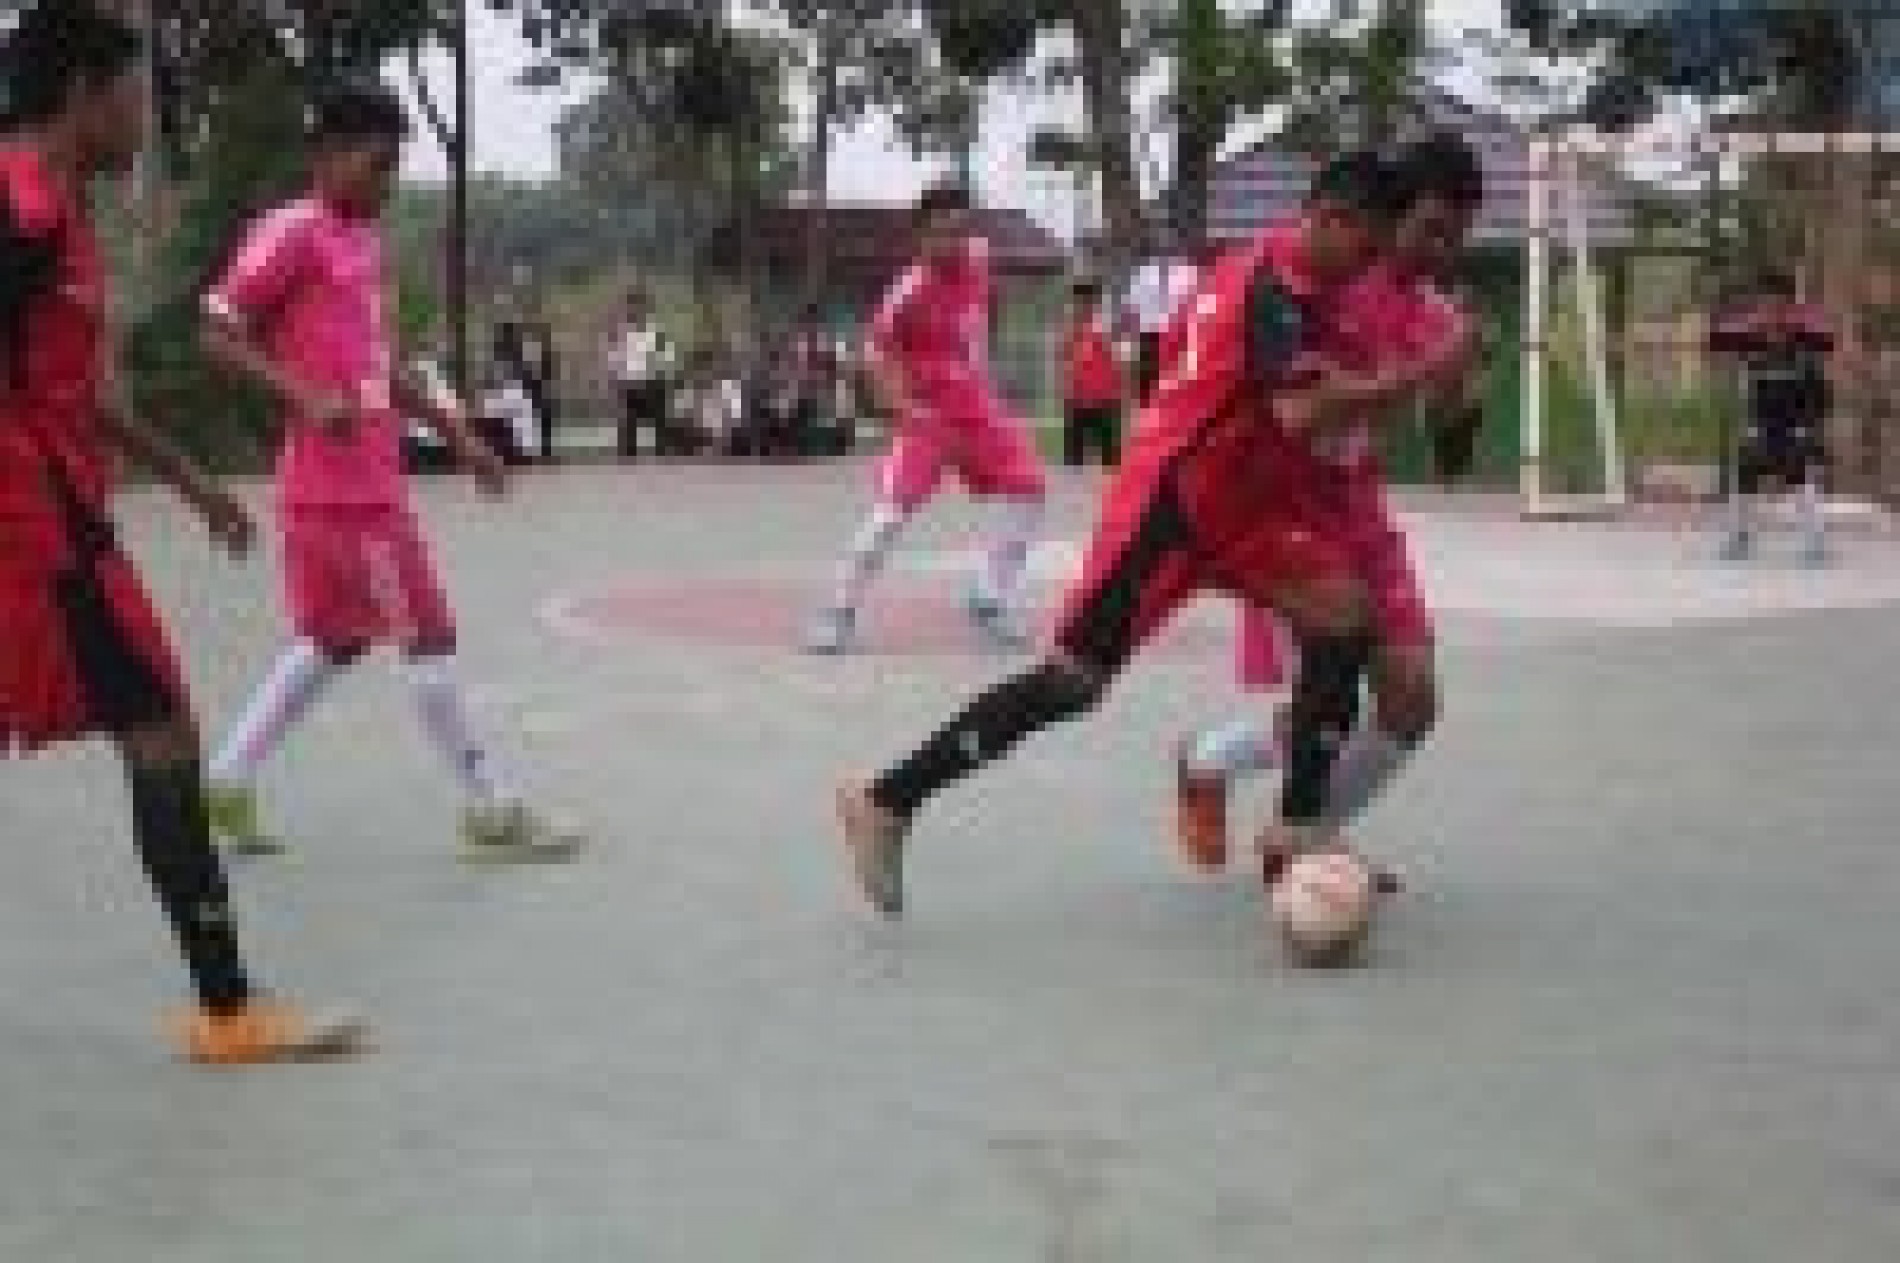 SMAGA Futsal Competition